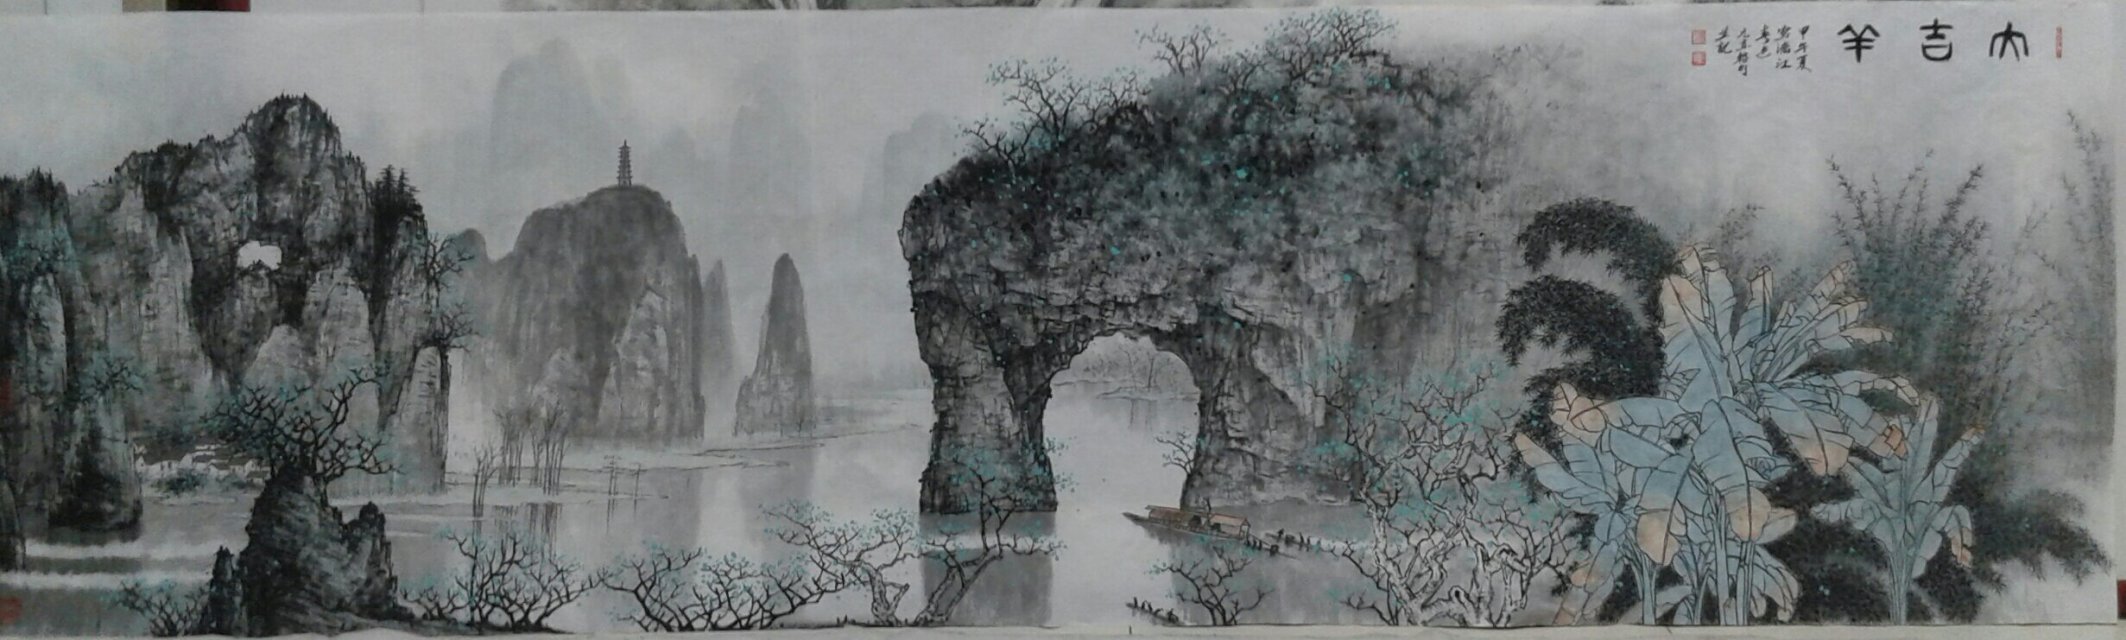 漓江山水国画